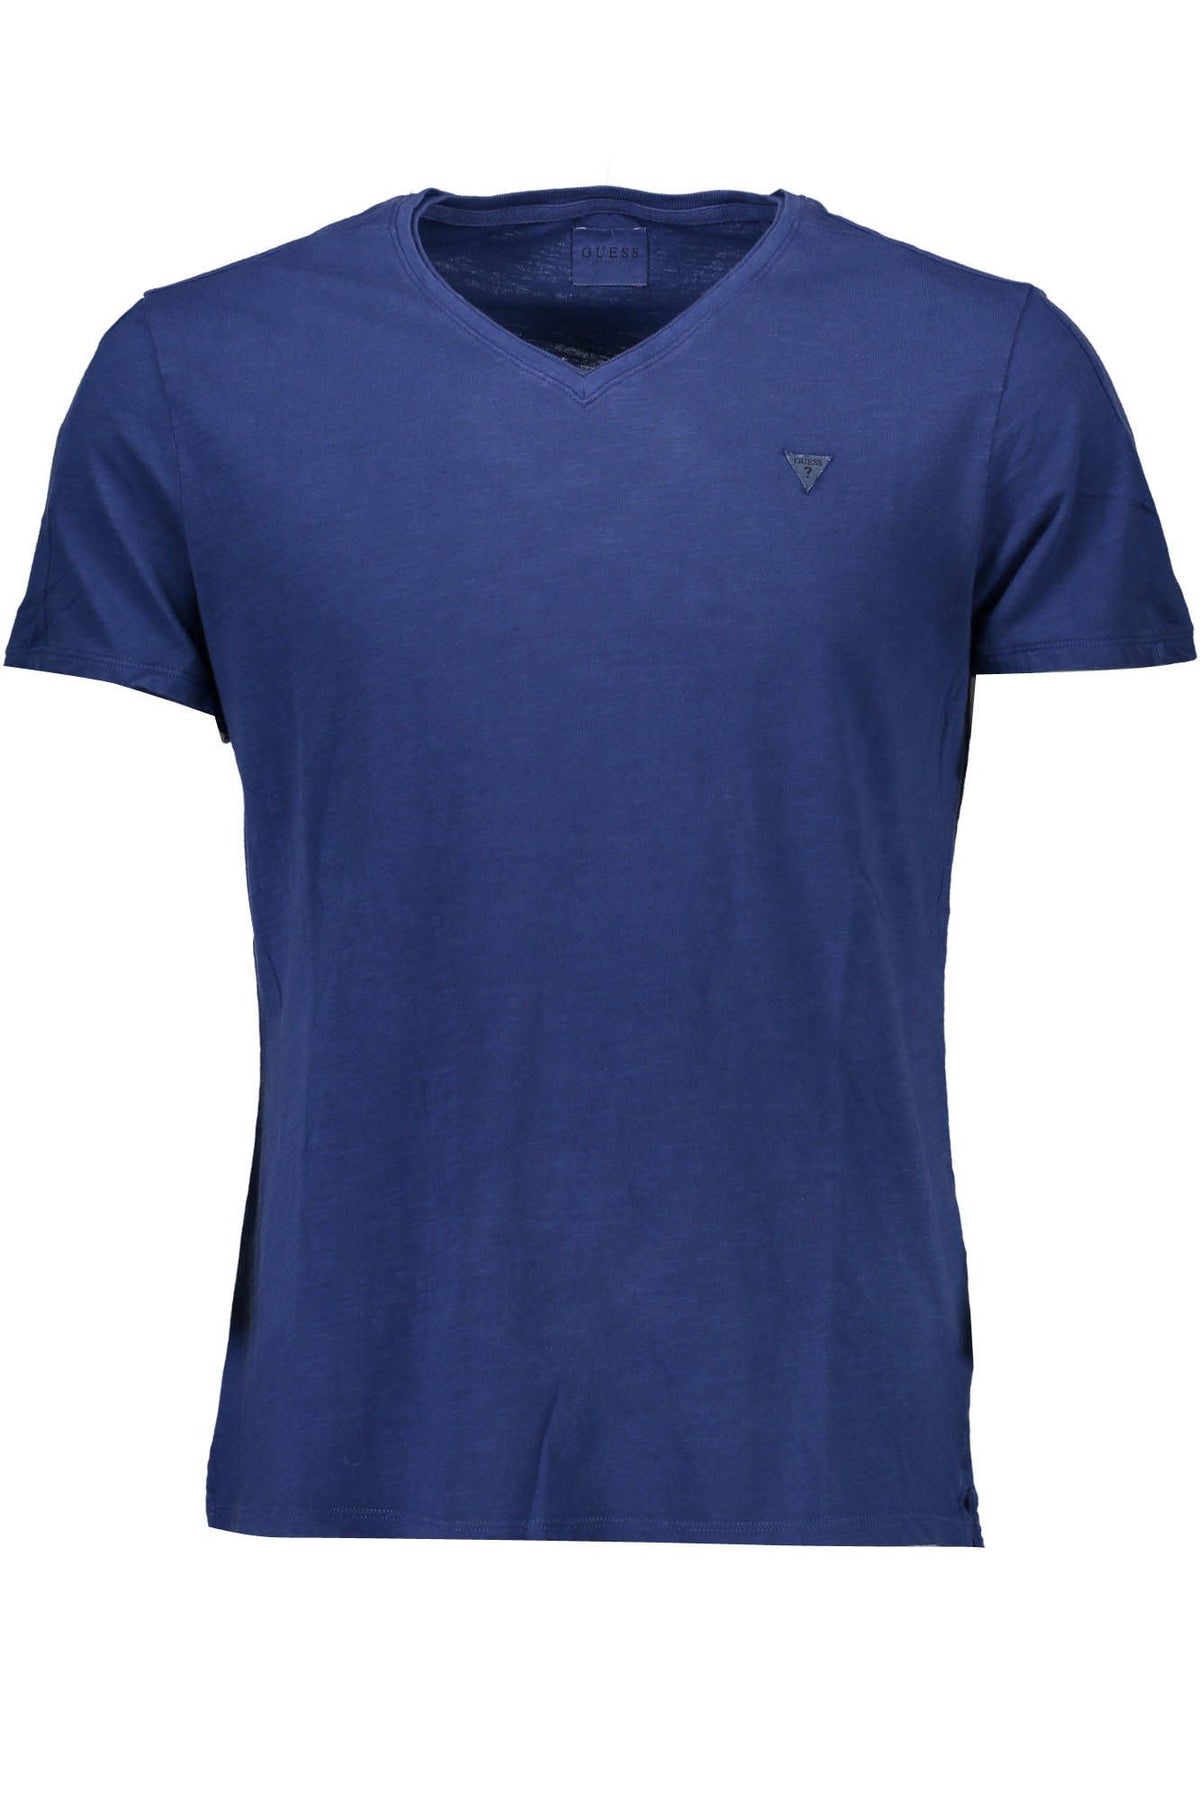 GUESS JEANS Herren T-Shirt Shirt Sweatshirt Oberteil mit V-Ausschnitt, kurzärmlig